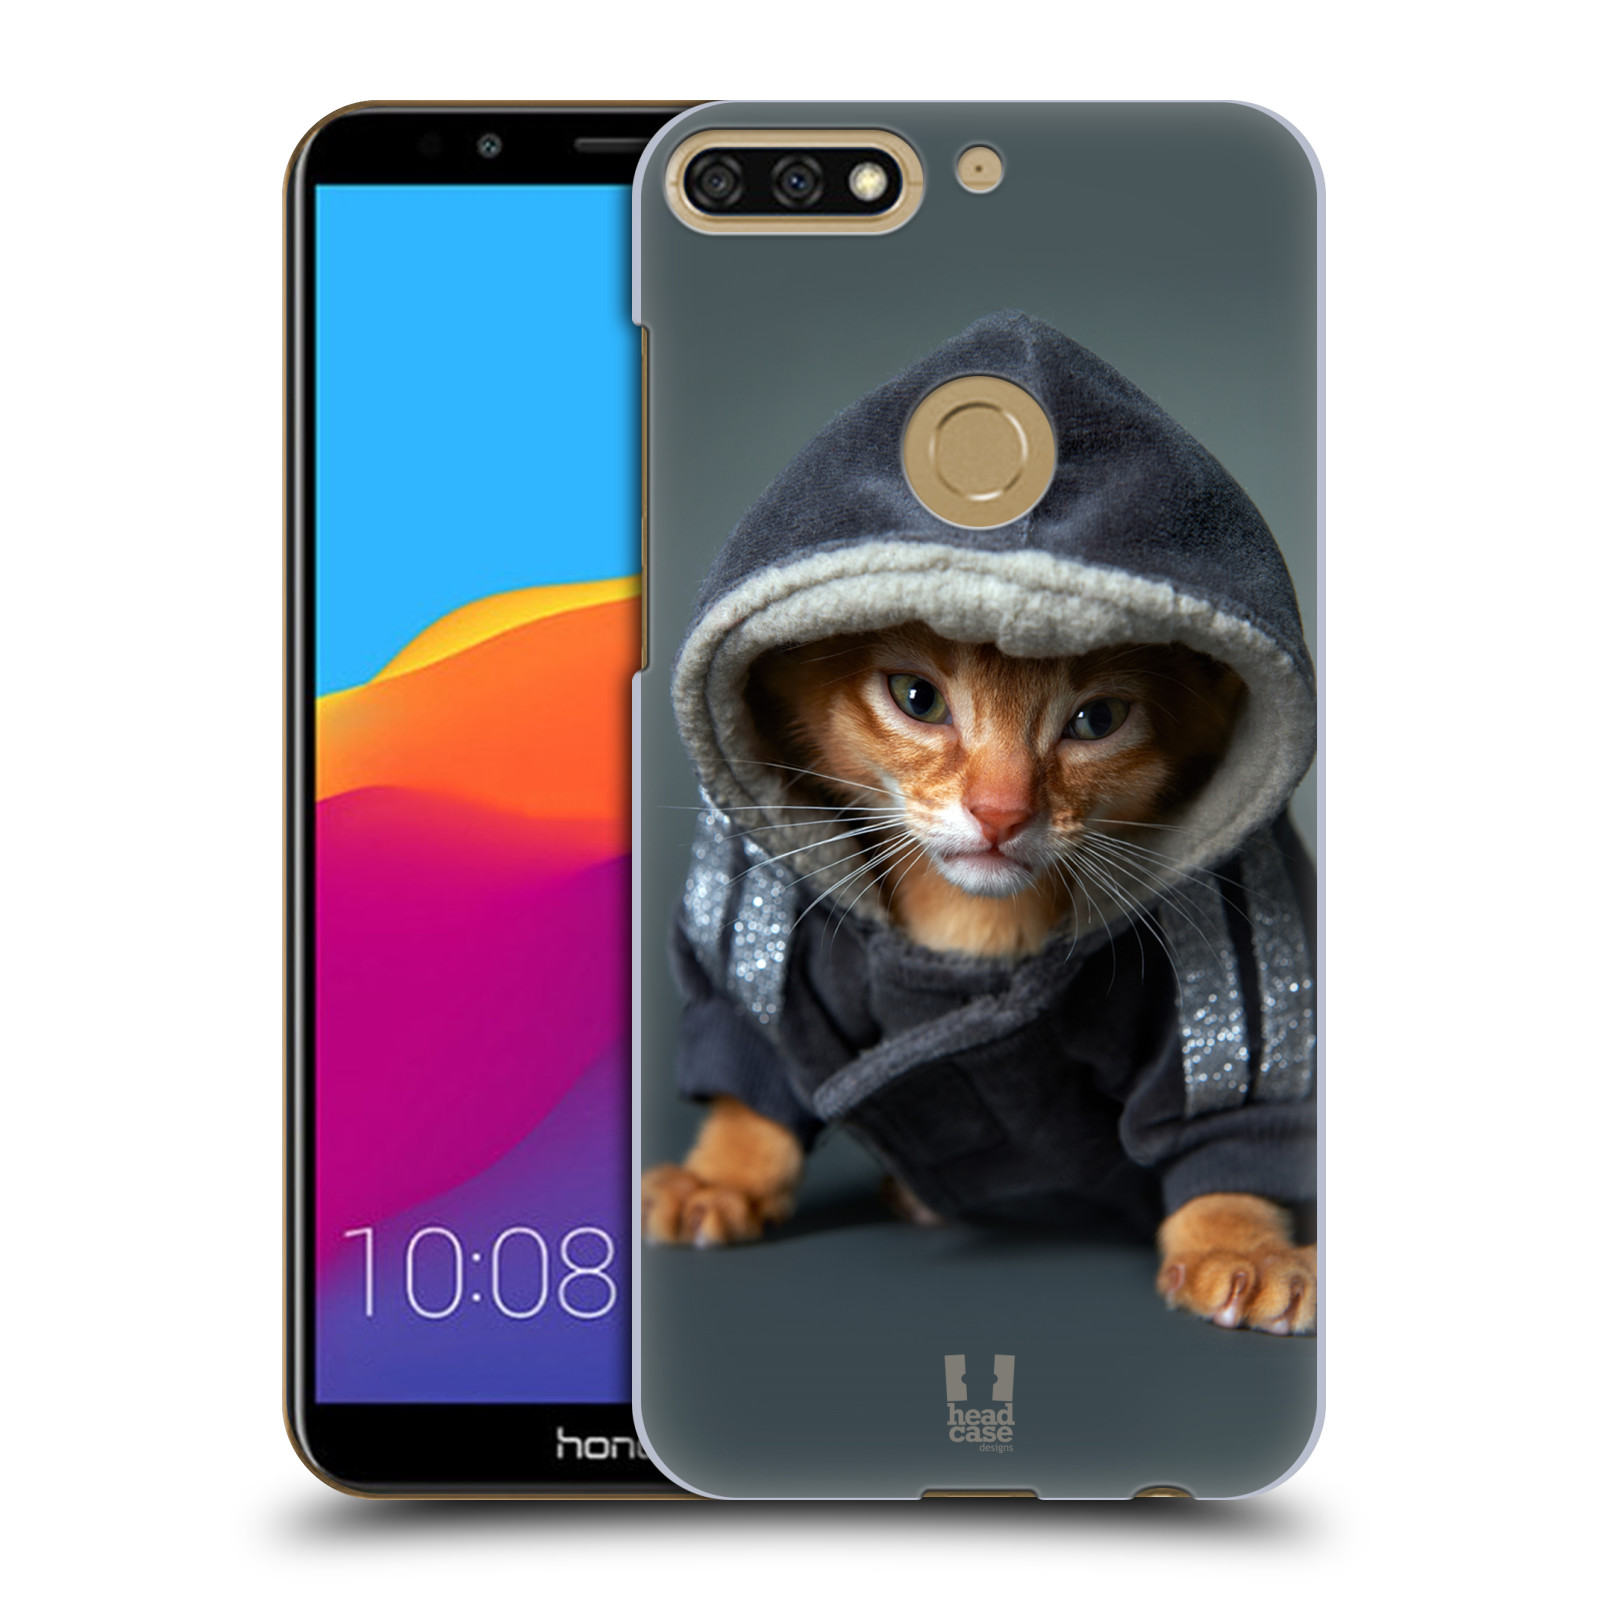 HEAD CASE plastový obal na mobil Honor 7c vzor Legrační zvířátka kotě/kočička s kapucí